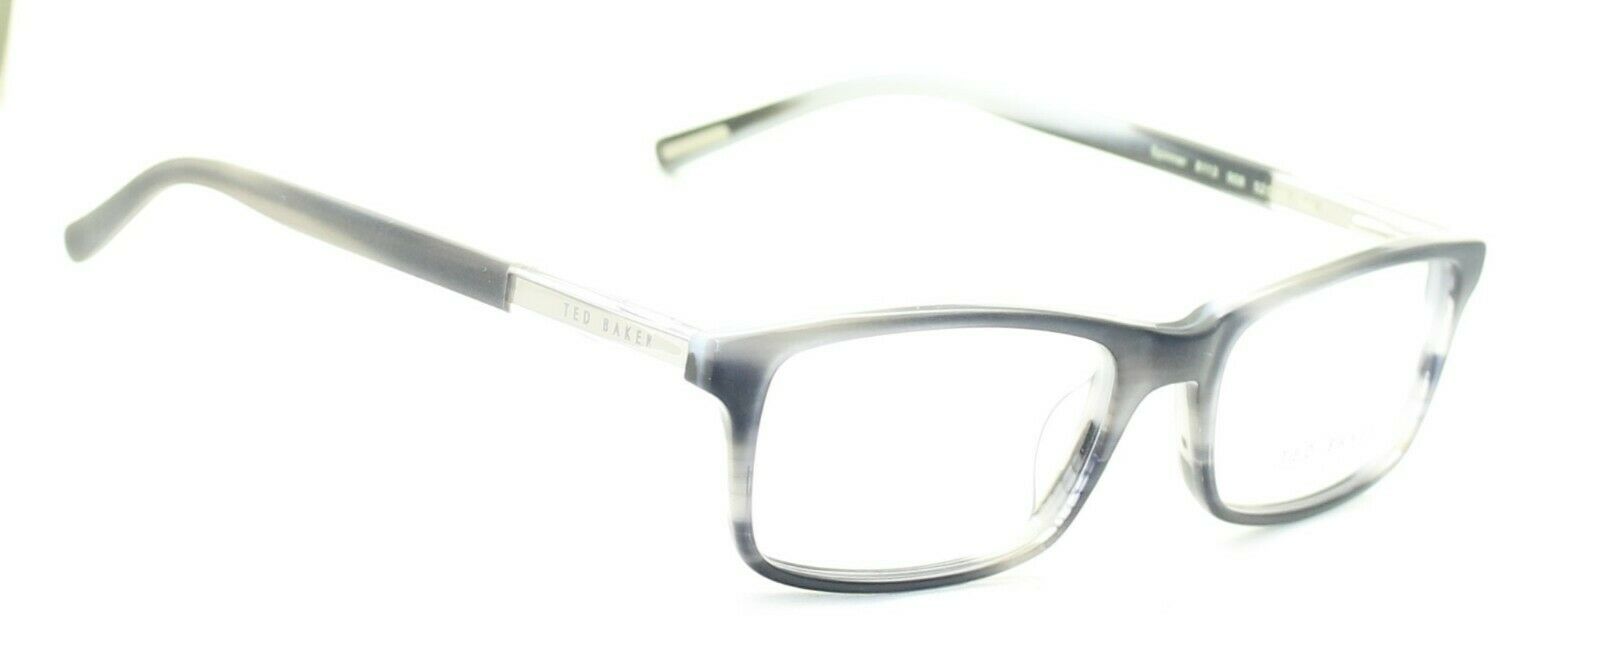 TED BAKER Spinner 8113 908 52mm FRAMES Glasses Eyeglasses RX Optical Eyewear New